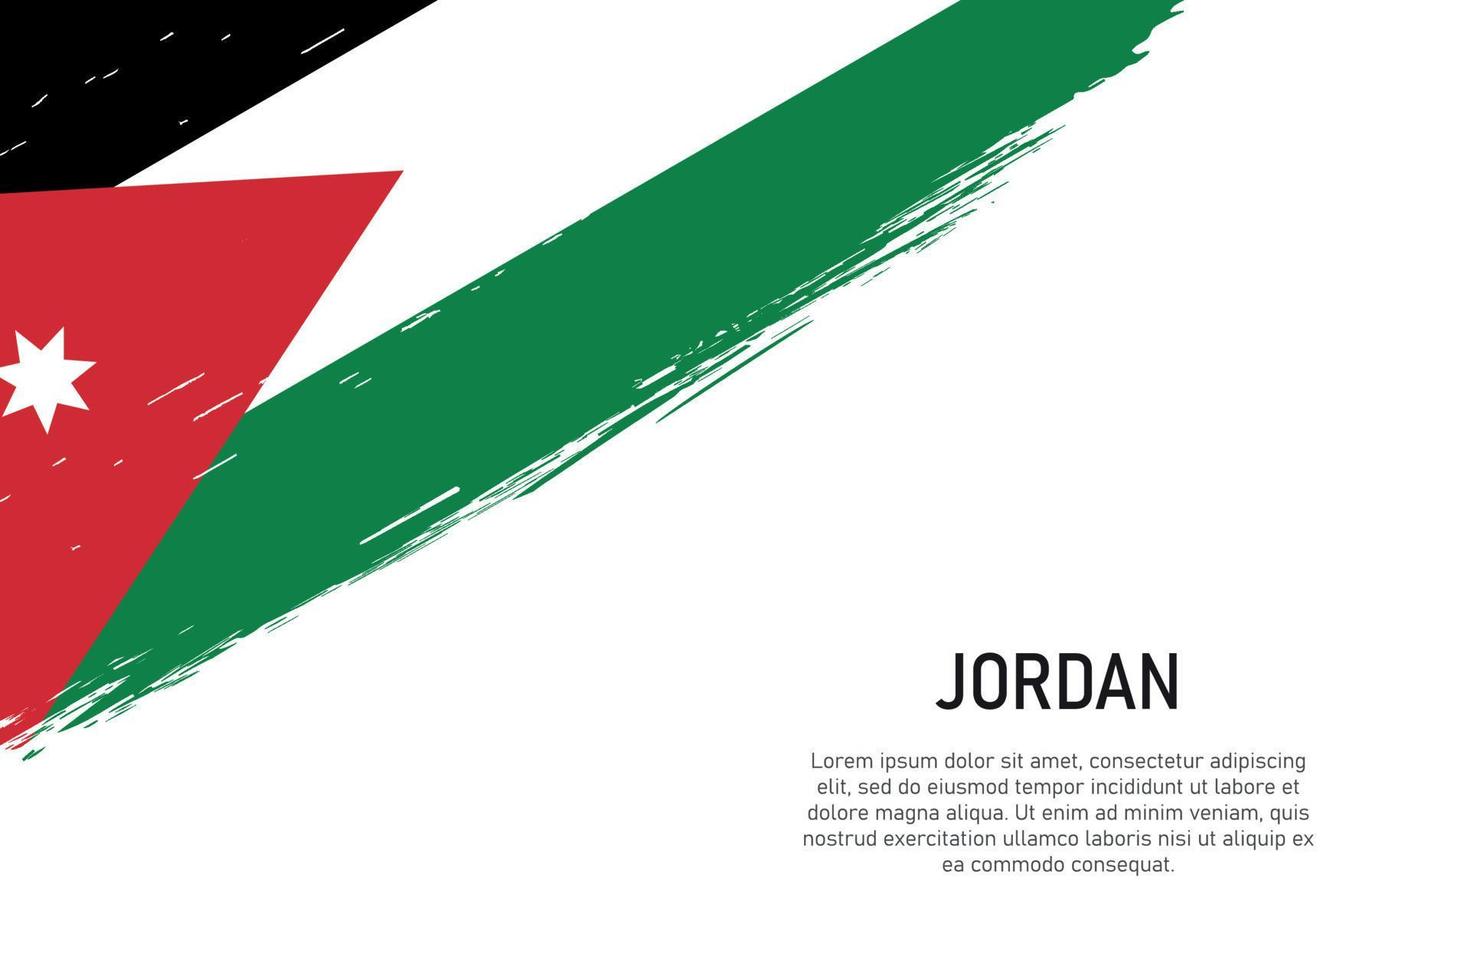 fond de coup de pinceau de style grunge avec le drapeau de la jordanie vecteur